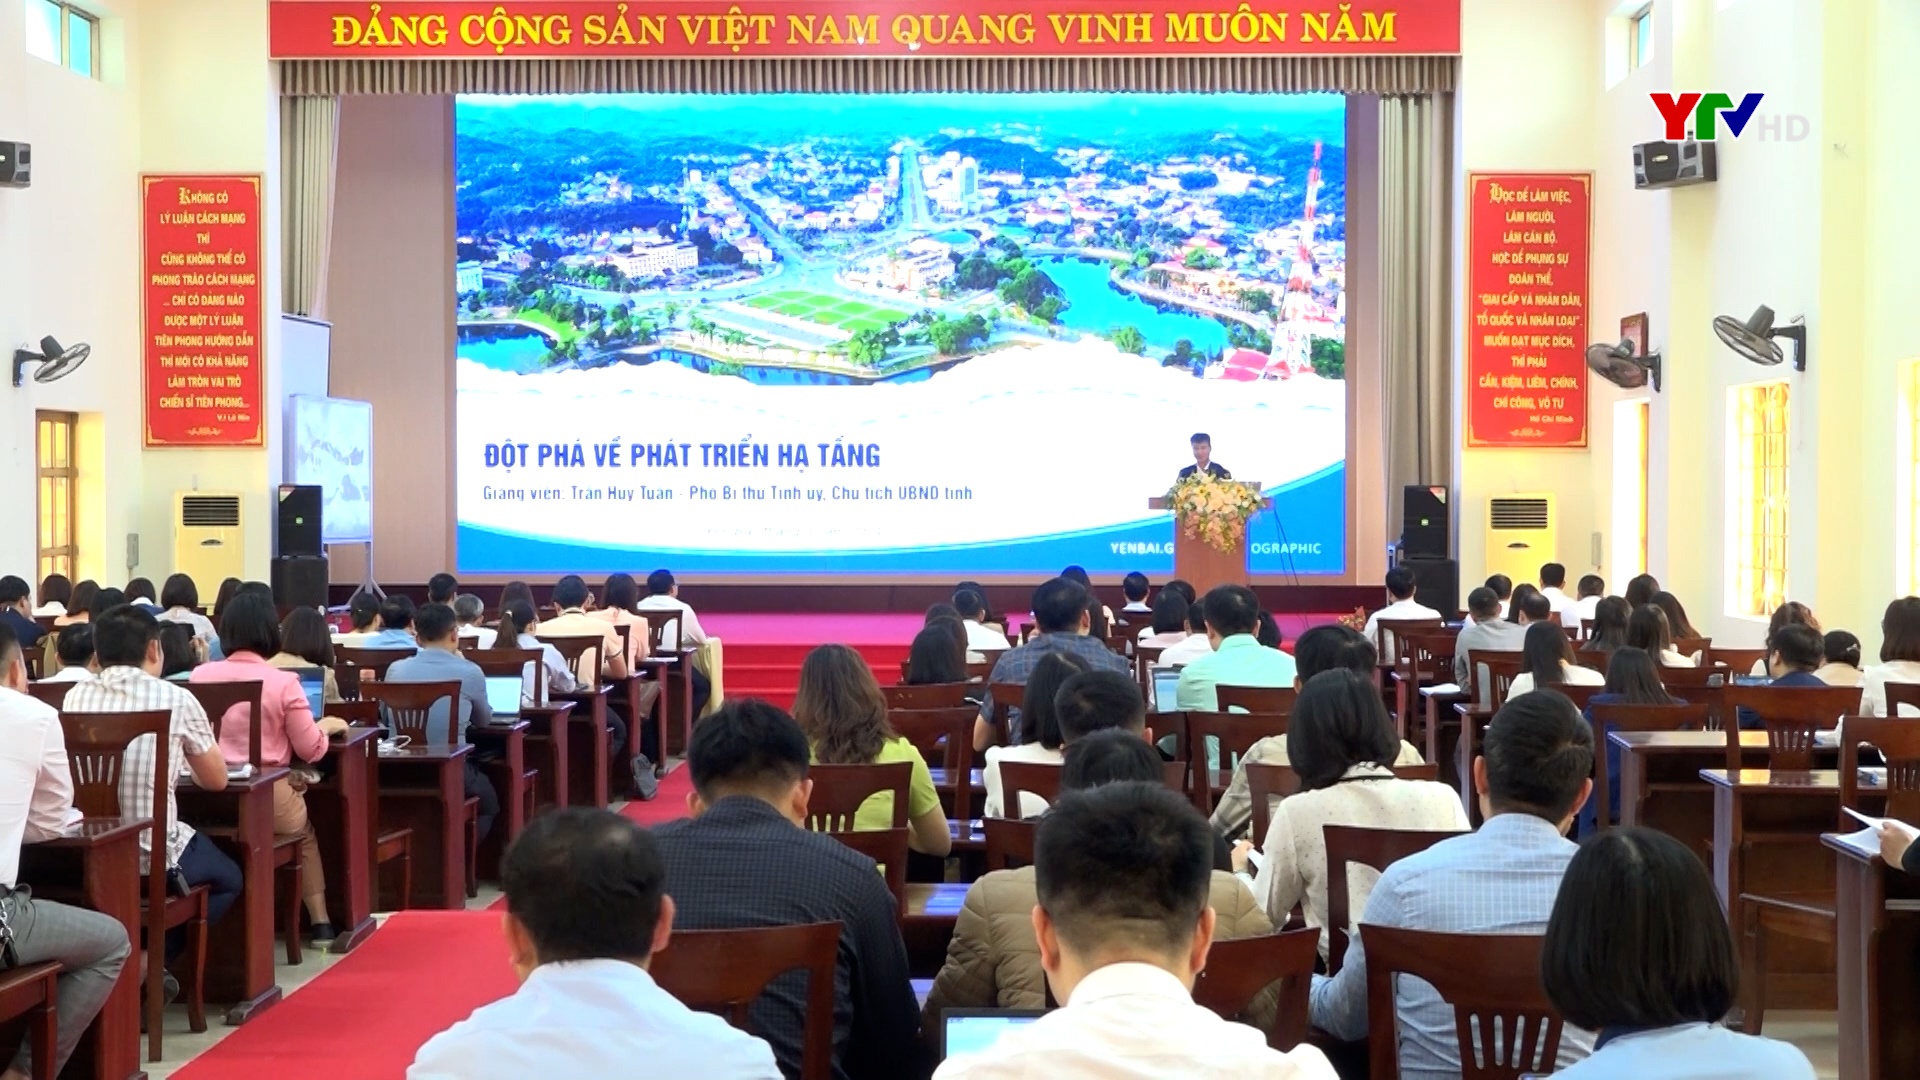 Đồng chí Chủ tịch UBND tỉnh Trần Huy Tuấn giảng dạy chuyên đề "Đột phá về phát triển hạ tầng" cho cán bộ tham gia Đề án 11 của Tỉnh ủy